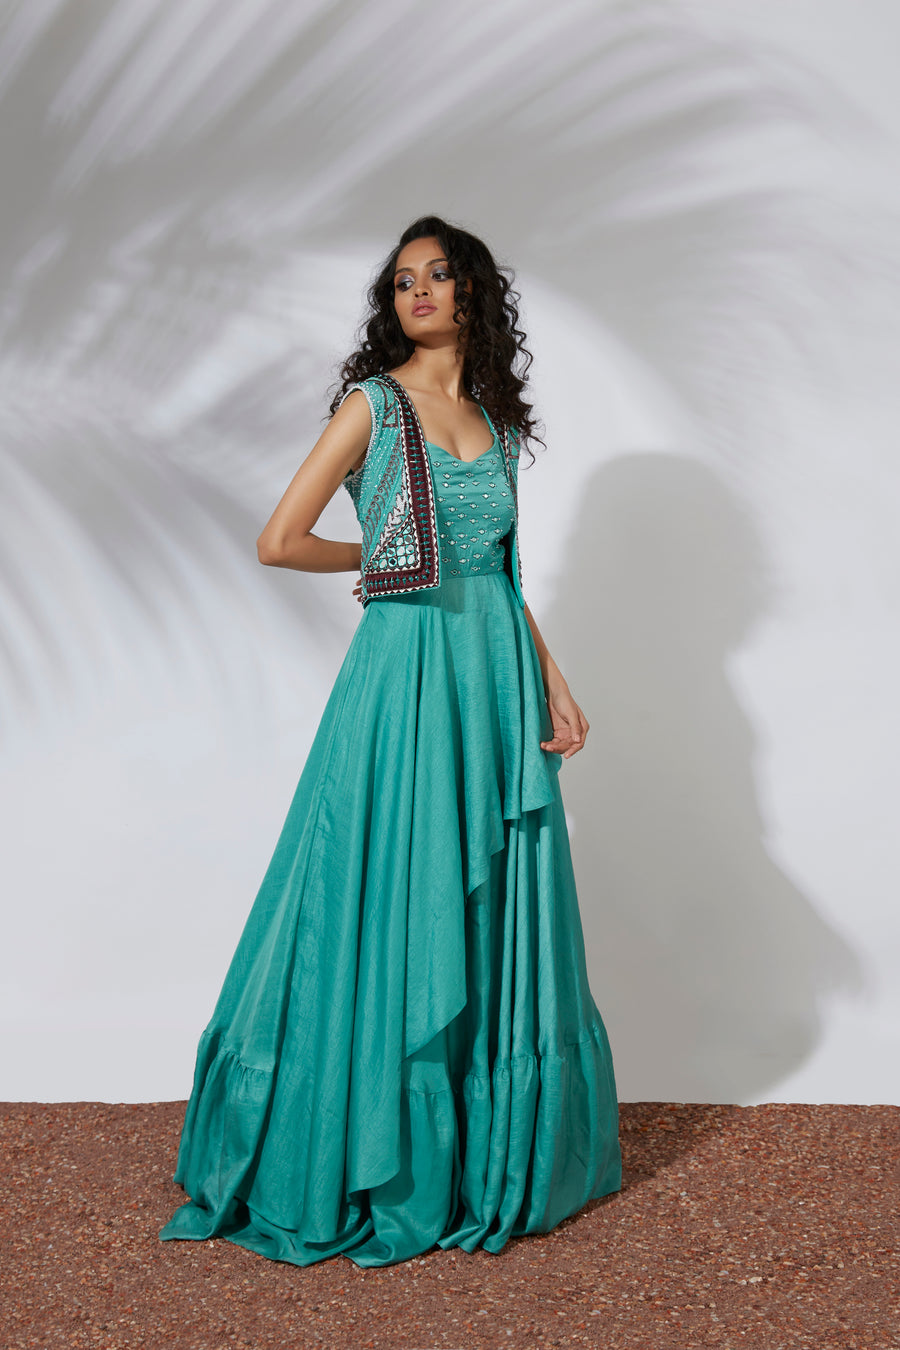 Mehak Murpana | Gown & Jacket | Indian Wedding Wear for sangeet & mehndi.